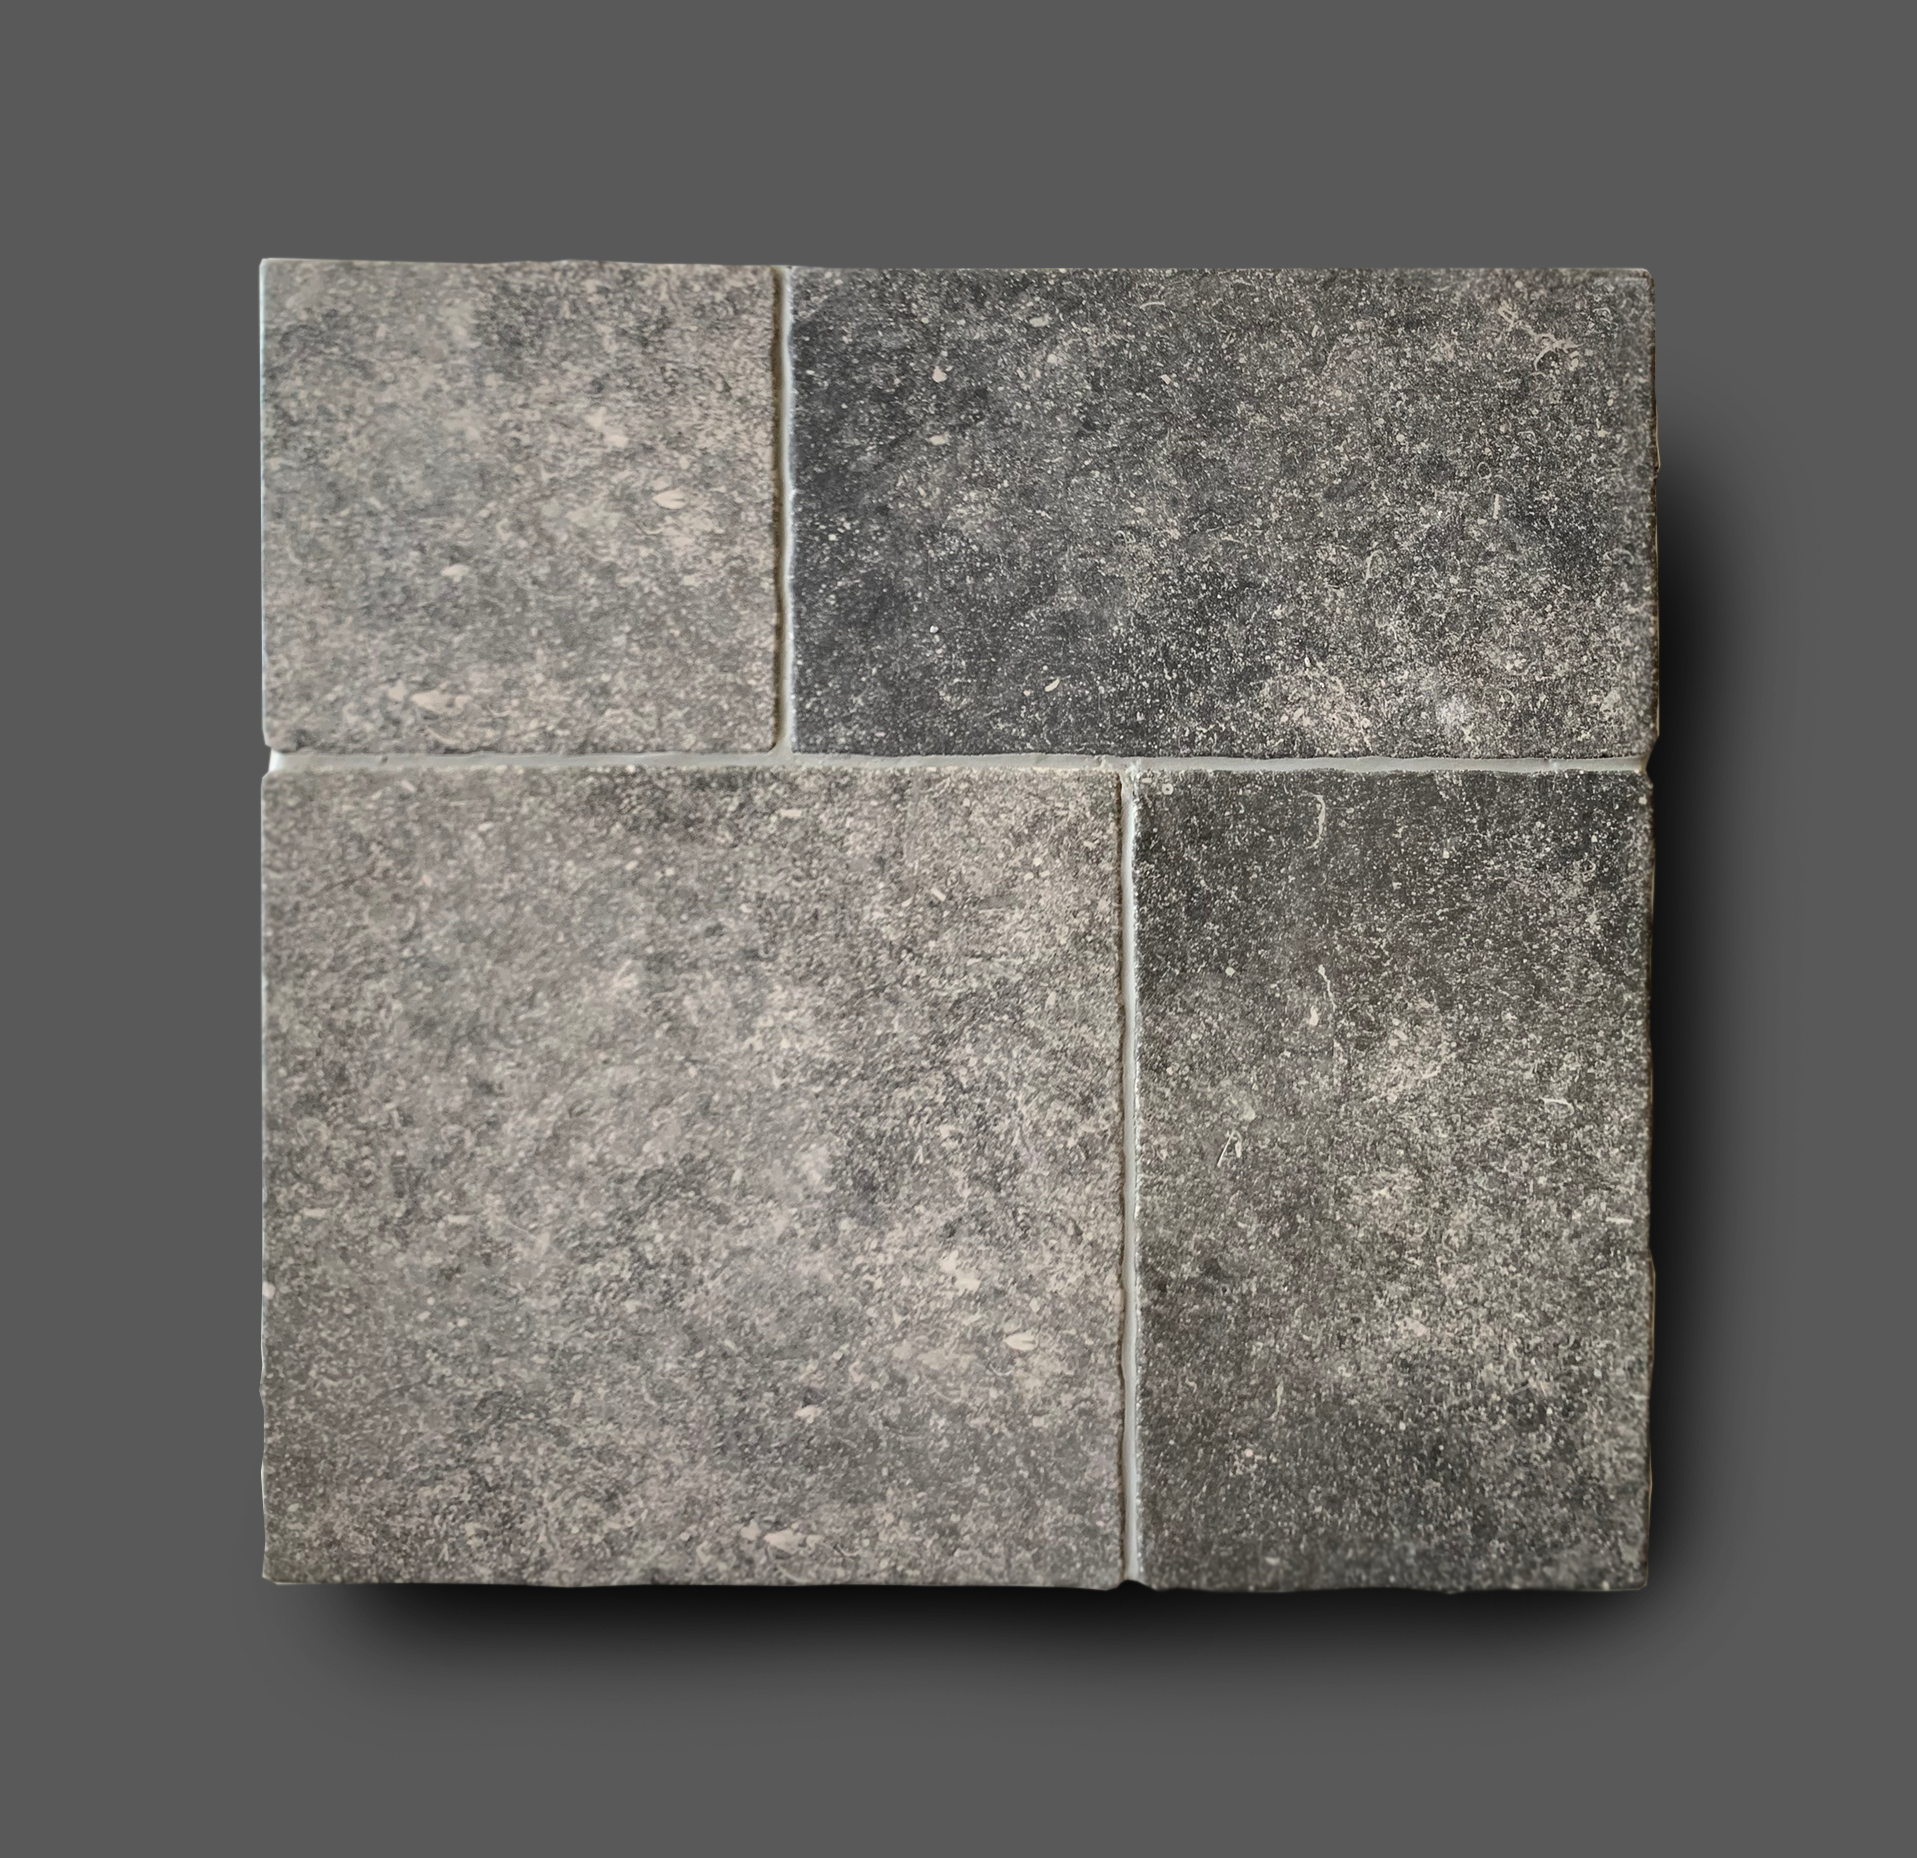 nakoming Shuraba Bijna Vloertegel 80x80 cm natuursteen look belgisch hardsteen grijs E13 